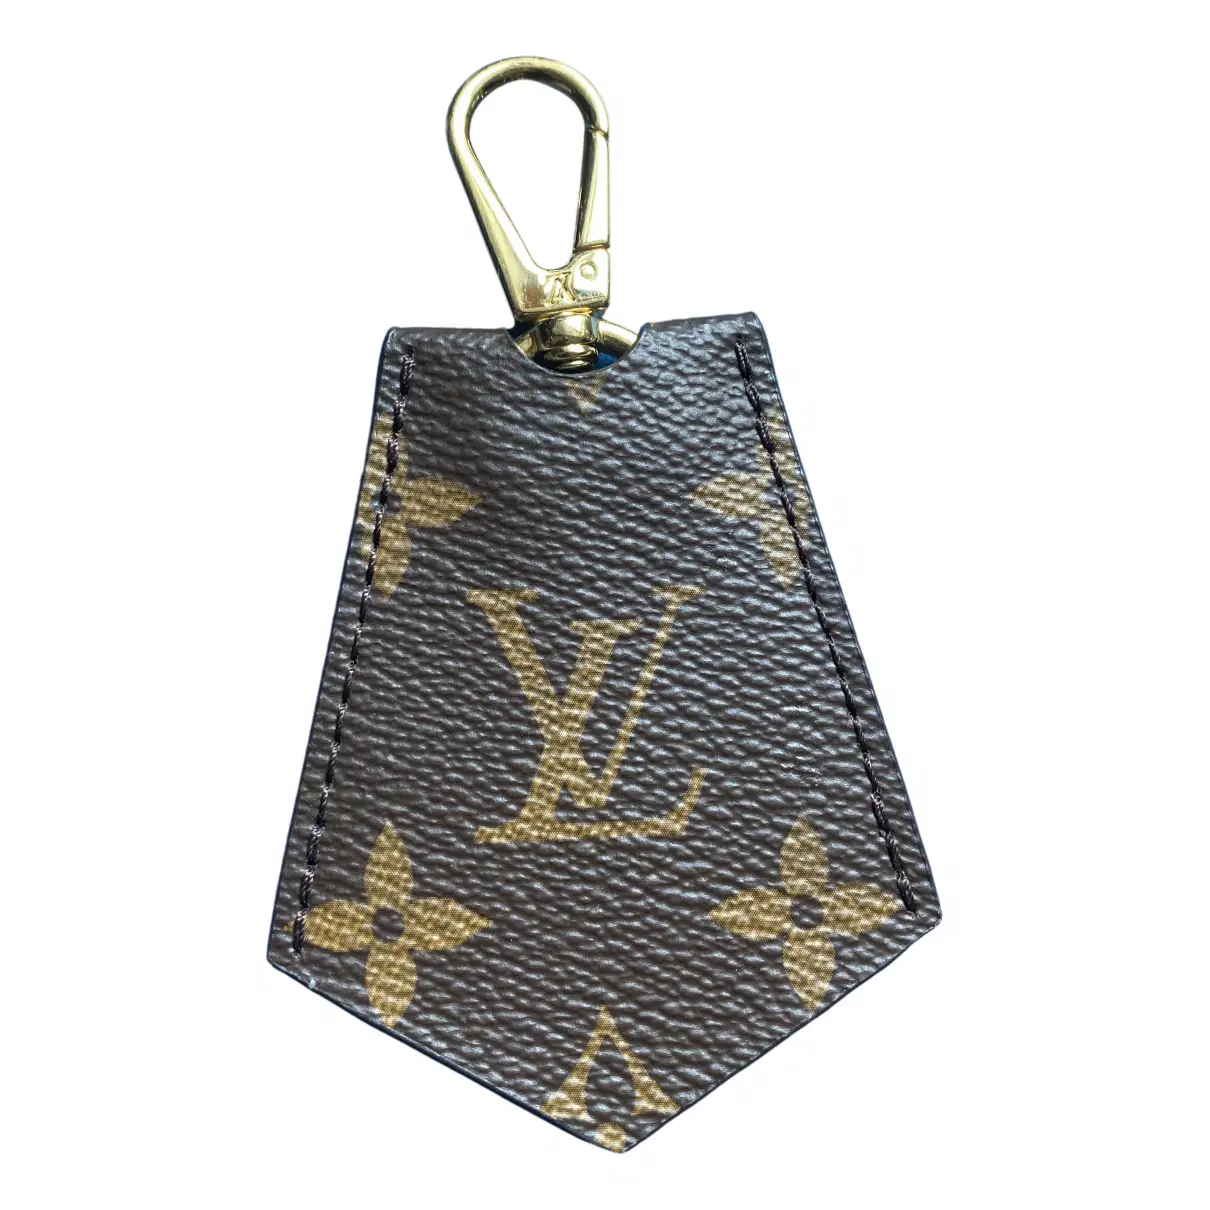 Cloth bag charm Louis Vuitton